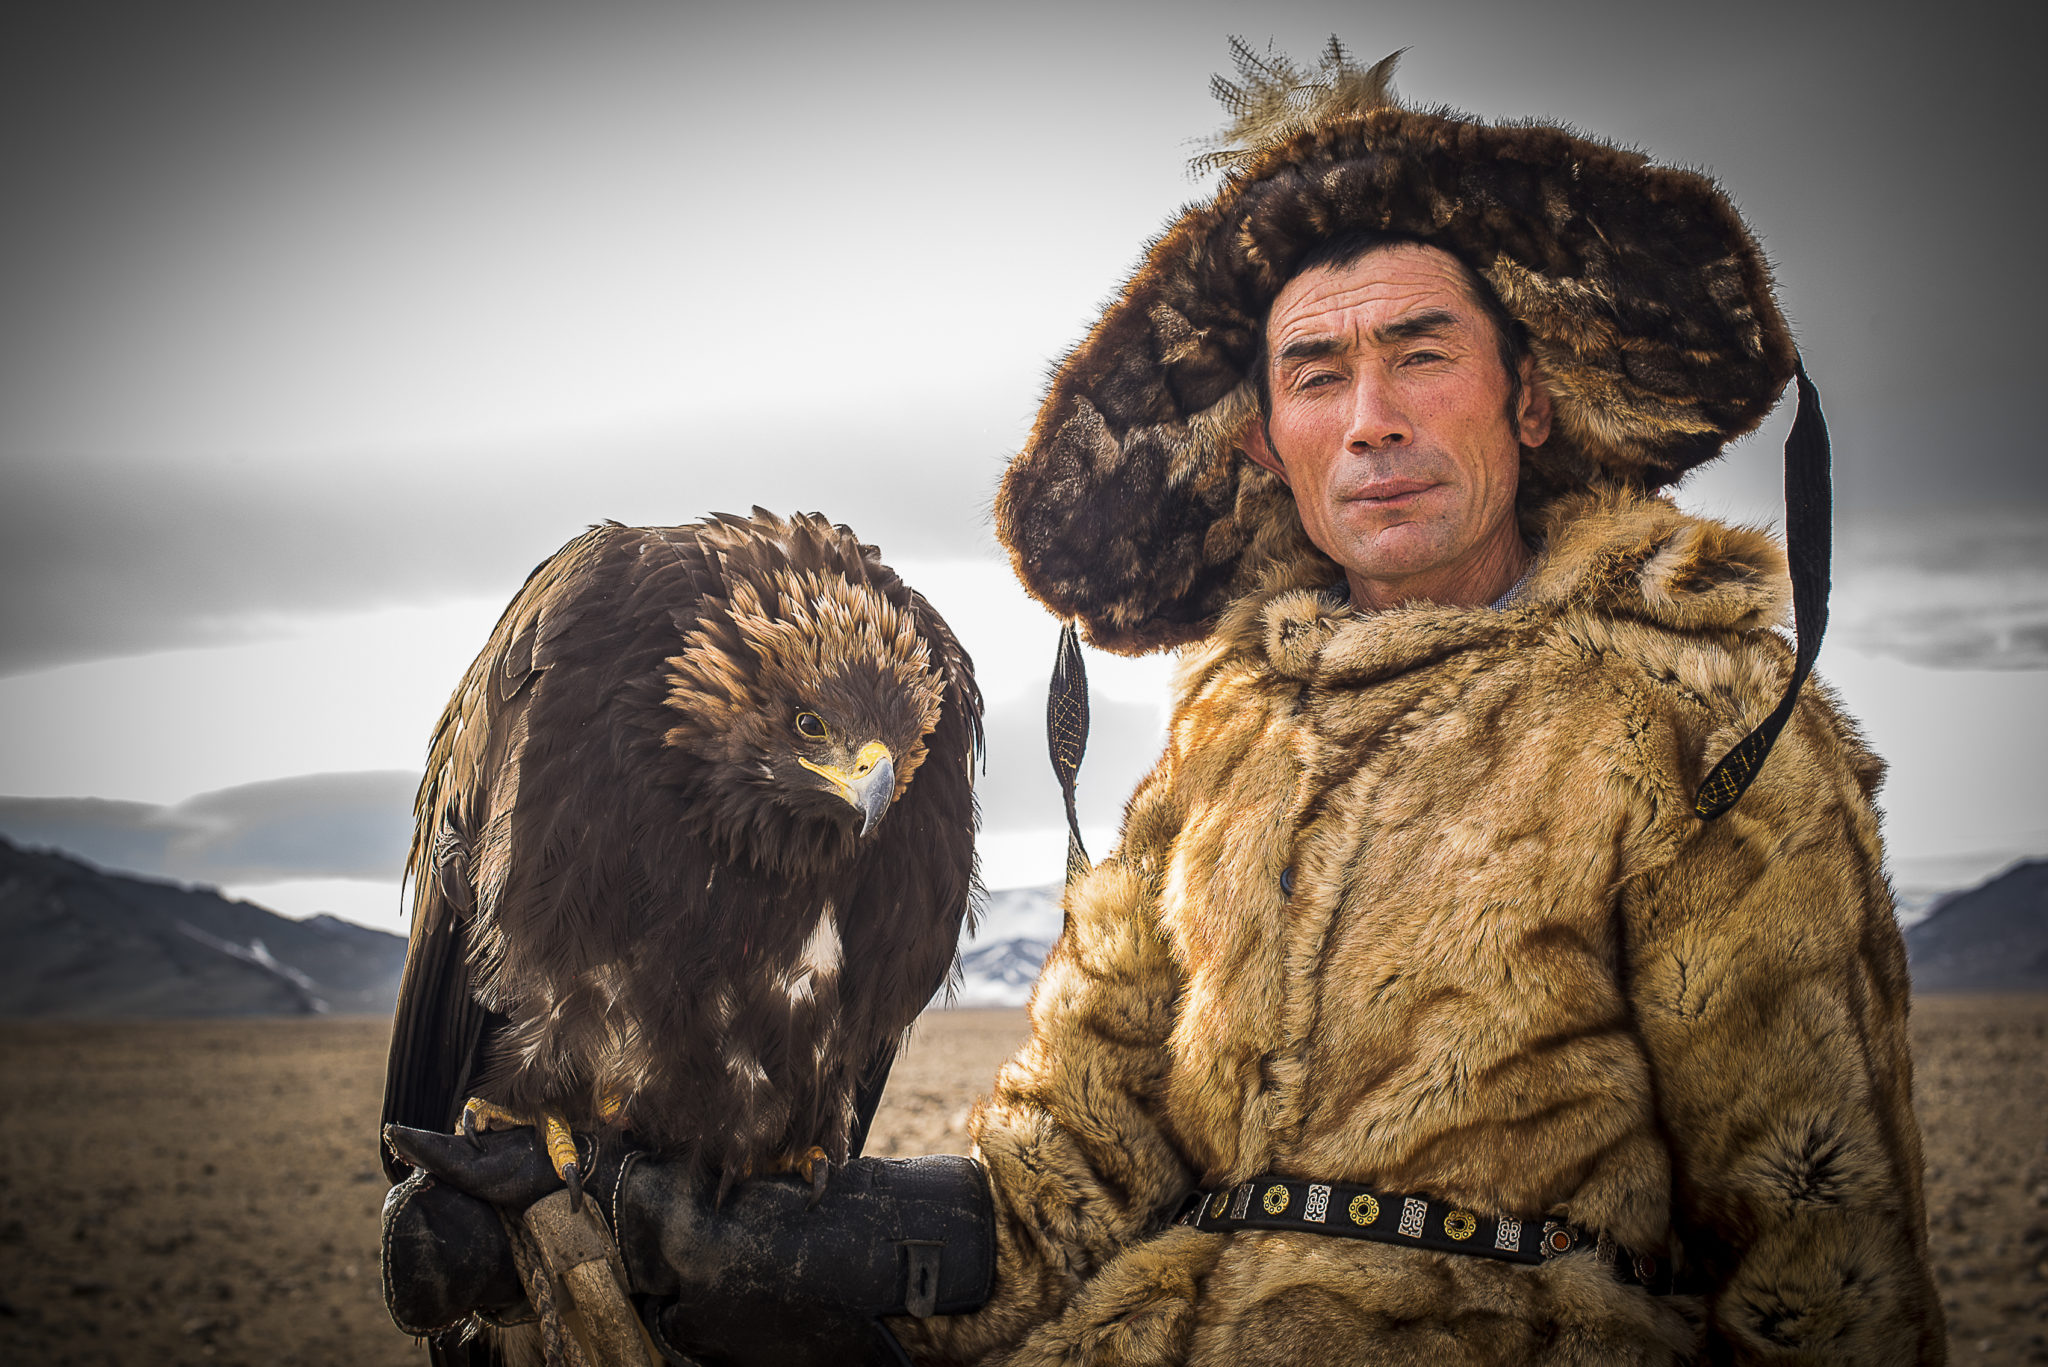 Kazach eagle hunter – Mongolia